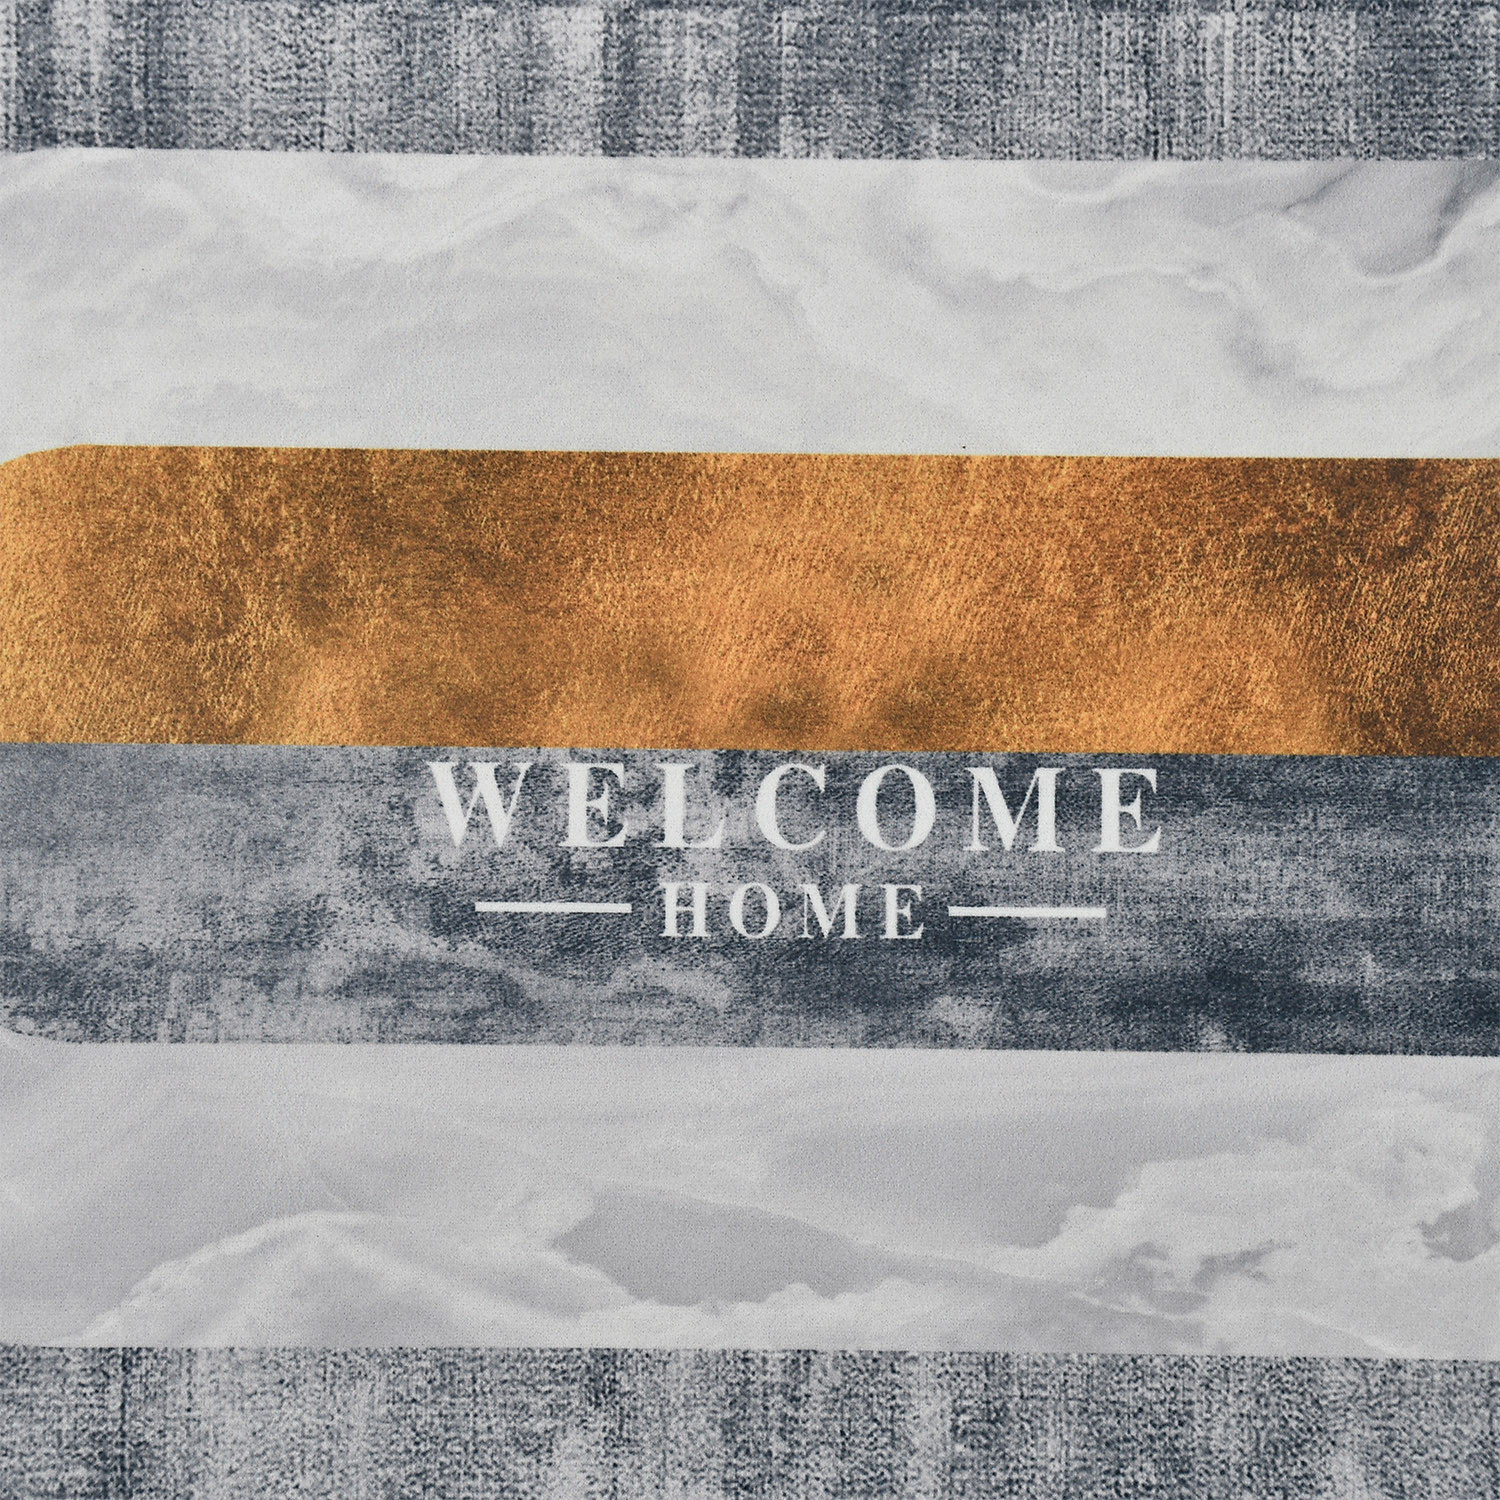 Kuber Industries Doormat|Doormat for Door Entrance|Doormats for Rooms|Doormat for Home|Memory Foam welcome Home Doormat (Grey)